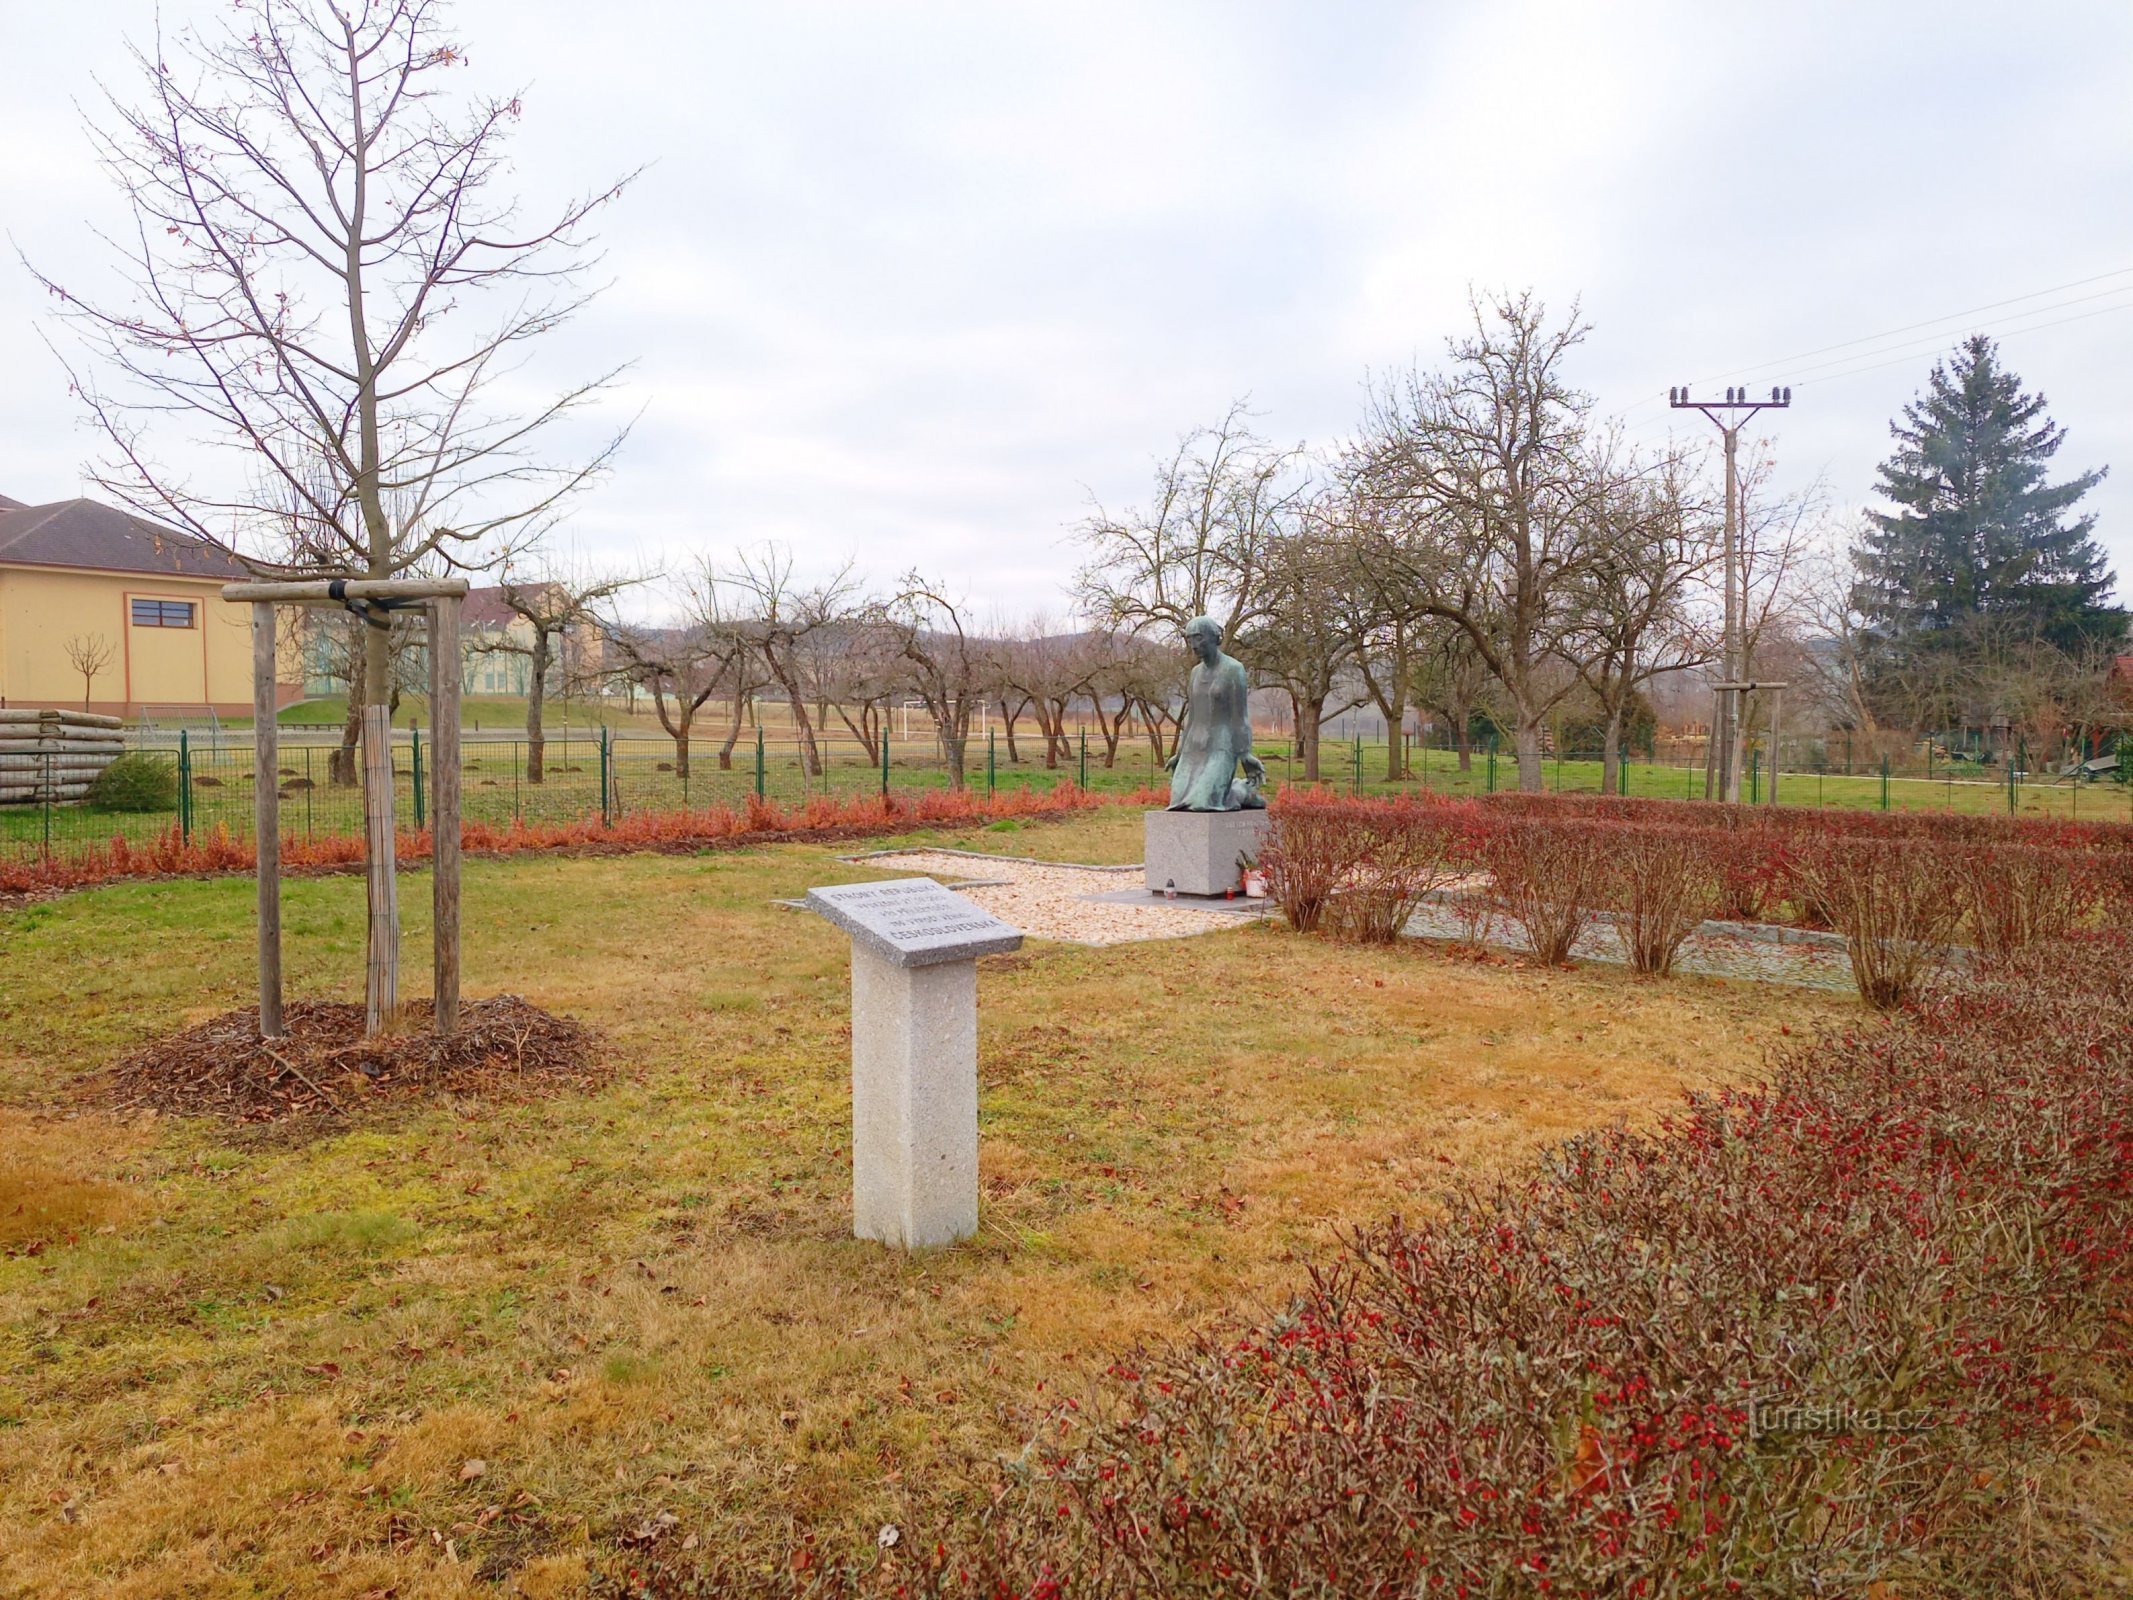 2. Monumento a las víctimas de la guerra en Sedlec